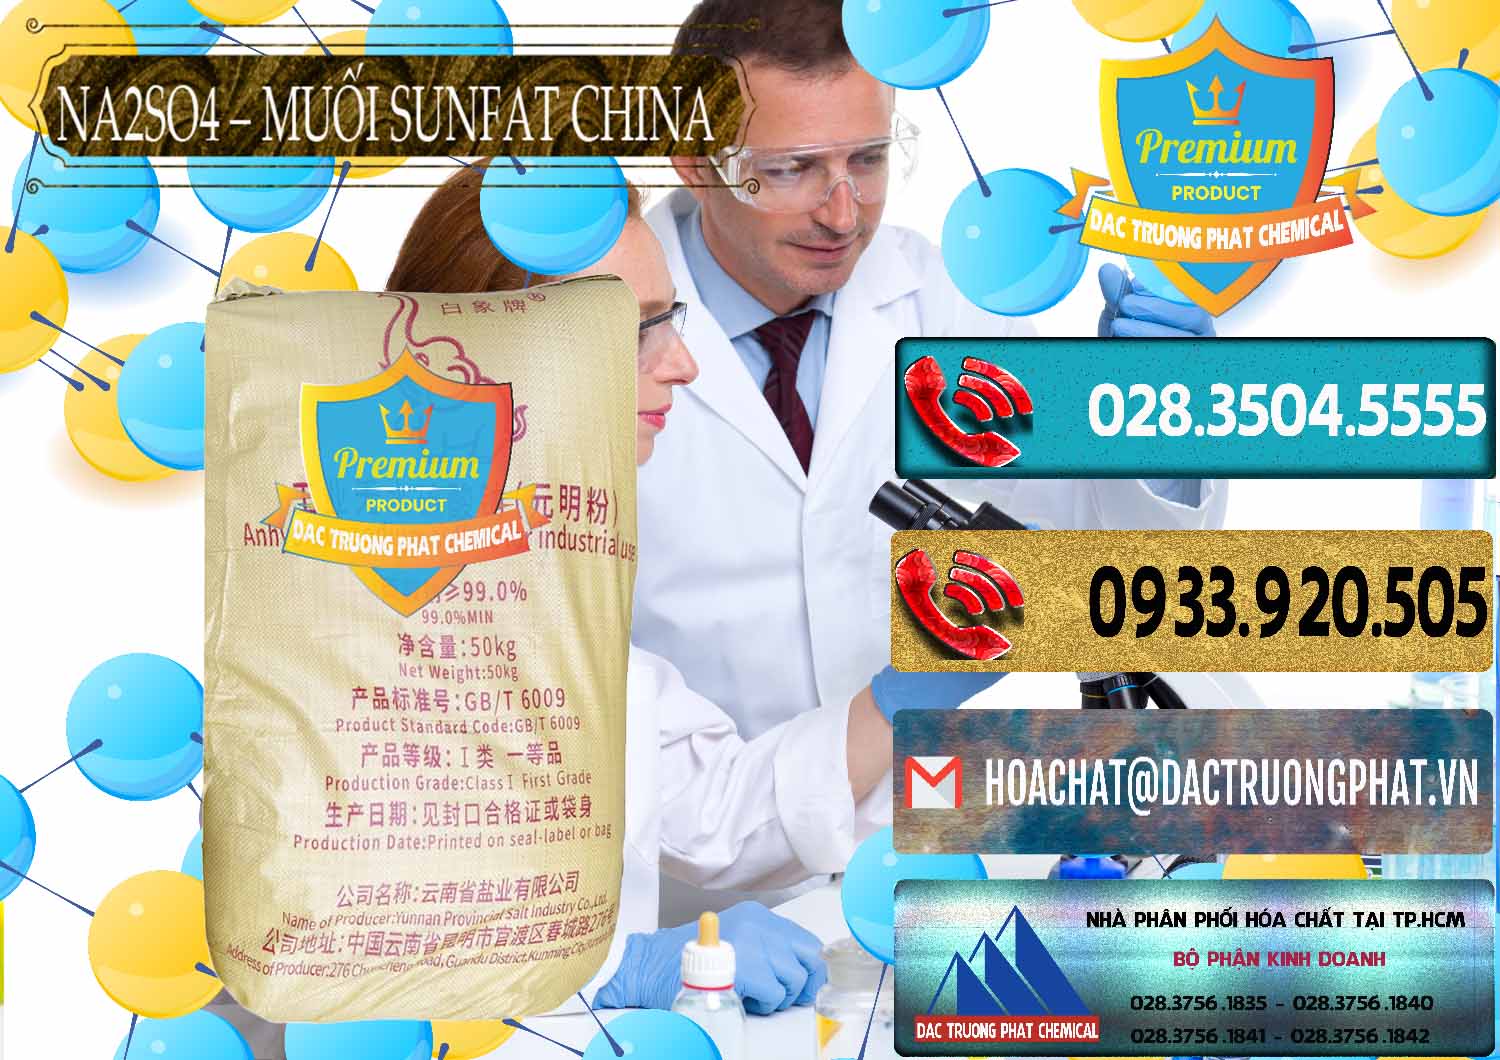 Công ty chuyên bán & cung cấp Sodium Sulphate - Muối Sunfat Na2SO4 Logo Con Voi Trung Quốc China - 0409 - Đơn vị chuyên bán - cung cấp hóa chất tại TP.HCM - hoachatdetnhuom.com